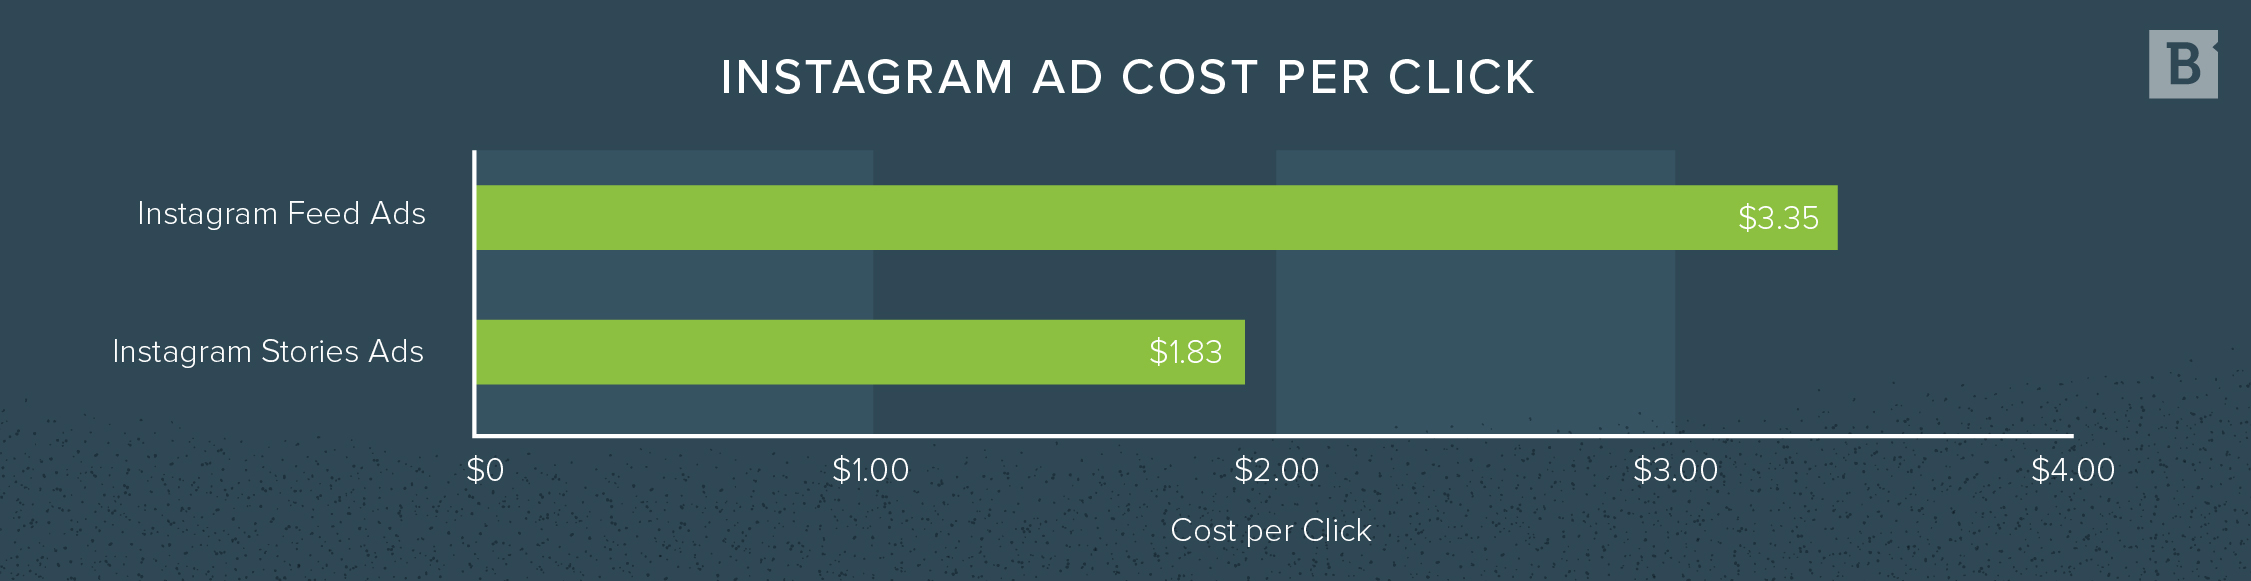 Instagram ad cost per click